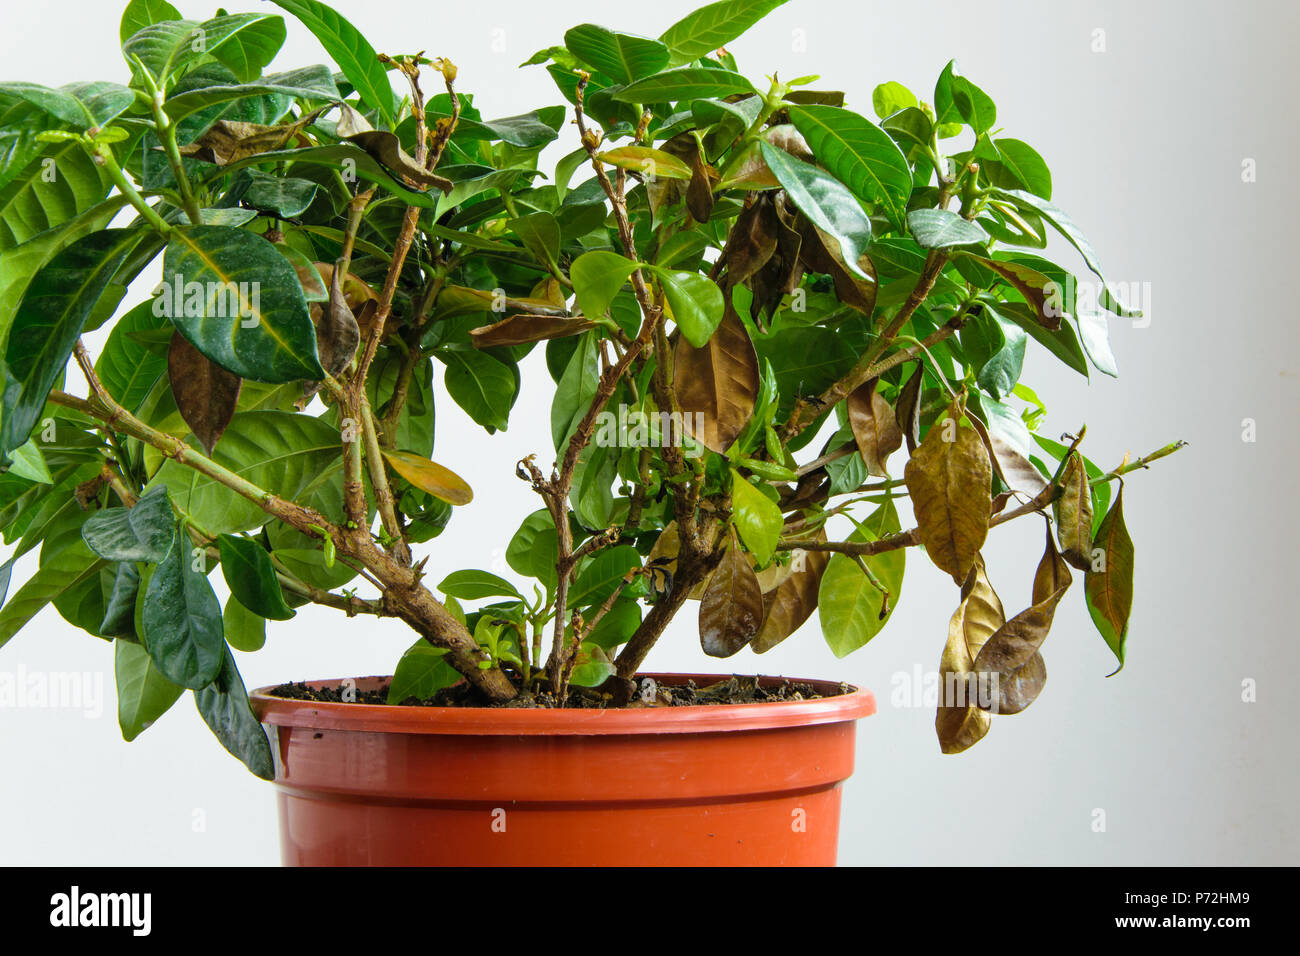 Enfermos gardenia planta con caída de hojas amarillas a causa de los  parásitos, el agua o la temperatura incorrecta, concepto de jardinería  Fotografía de stock - Alamy